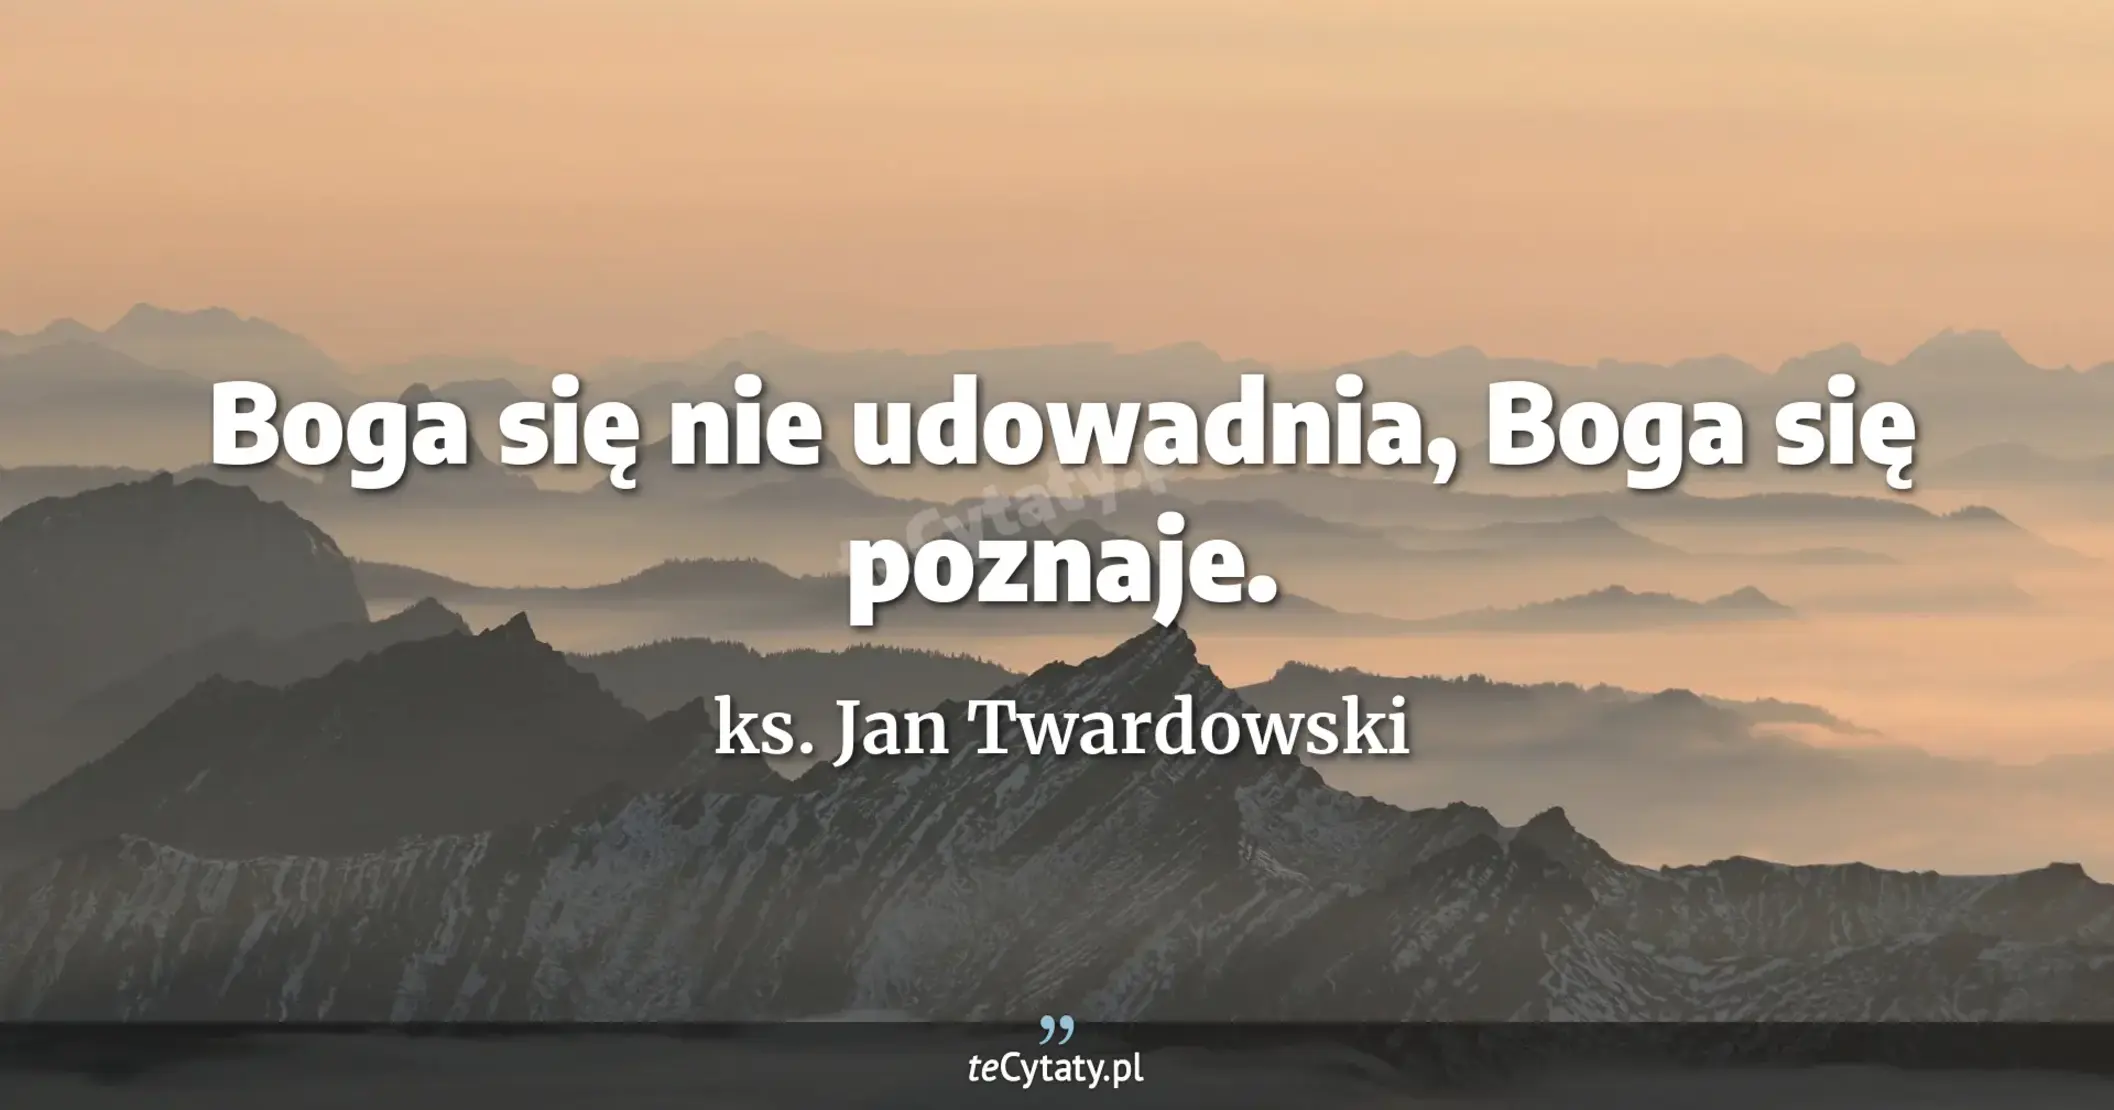 Boga się nie udowadnia, Boga się poznaje. - ks. Jan Twardowski